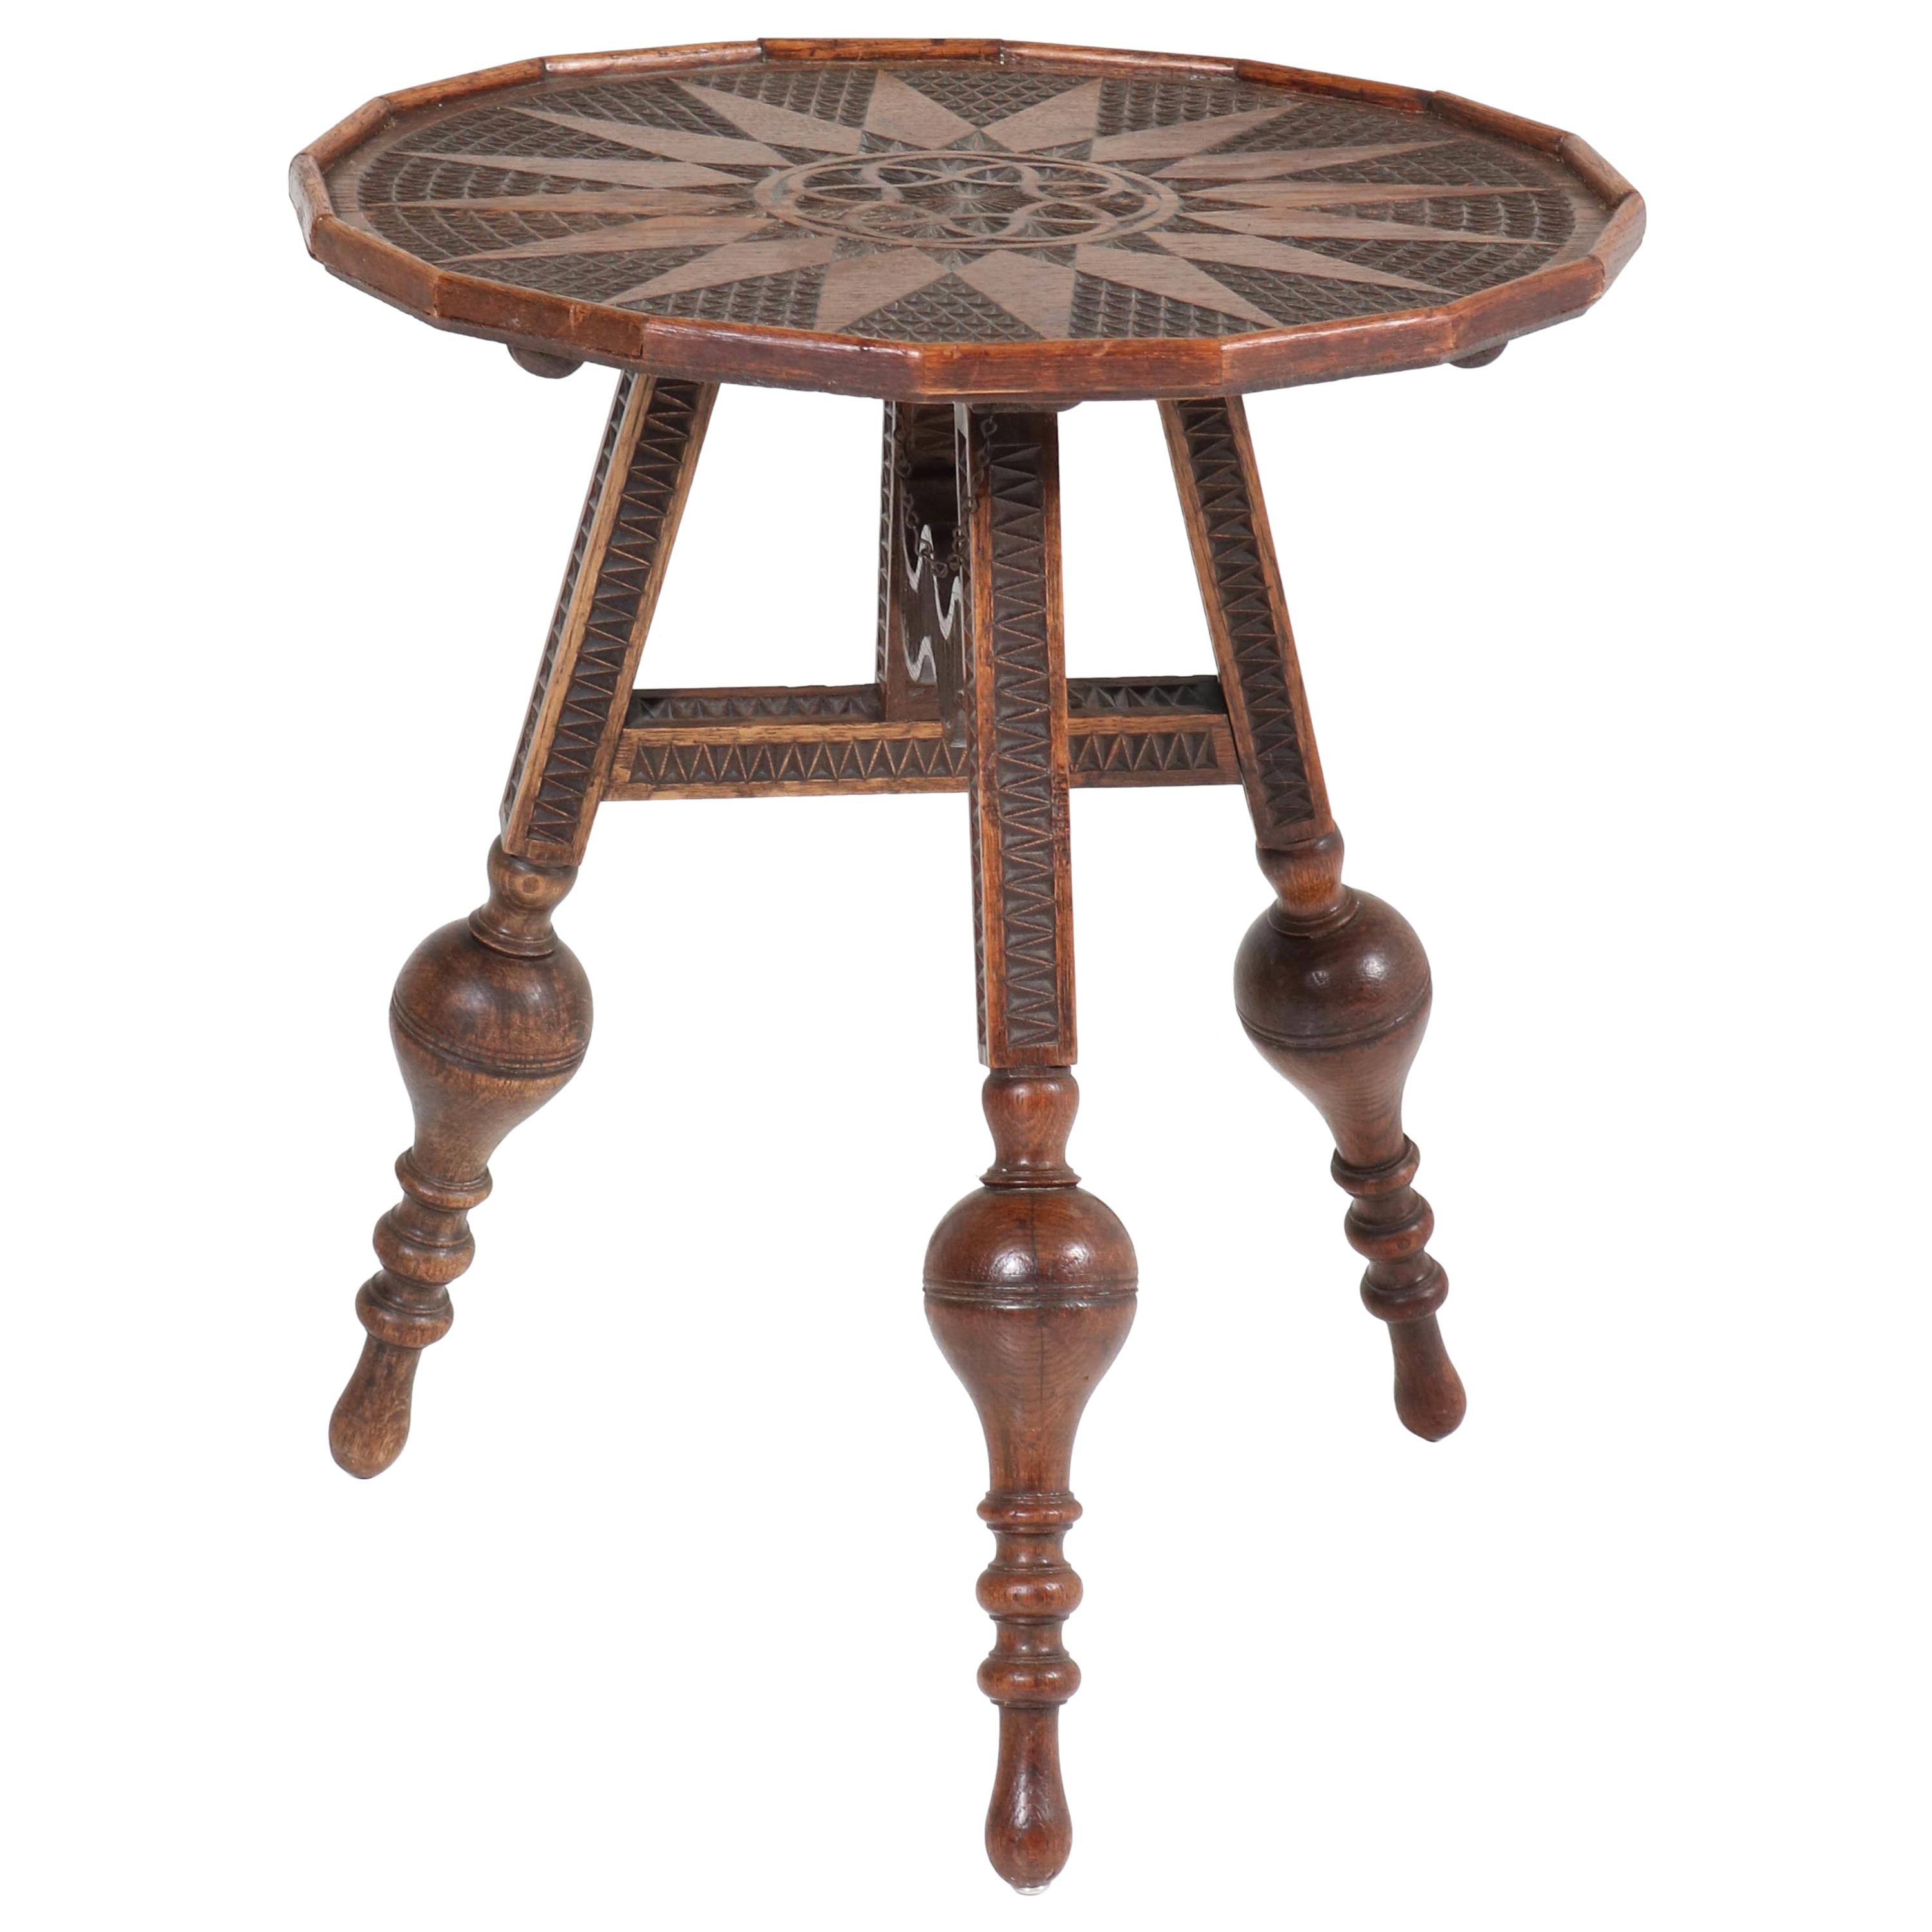 Dutch Renaissance Revival Tilt-Top Flap a/d Wand Table, 1900s